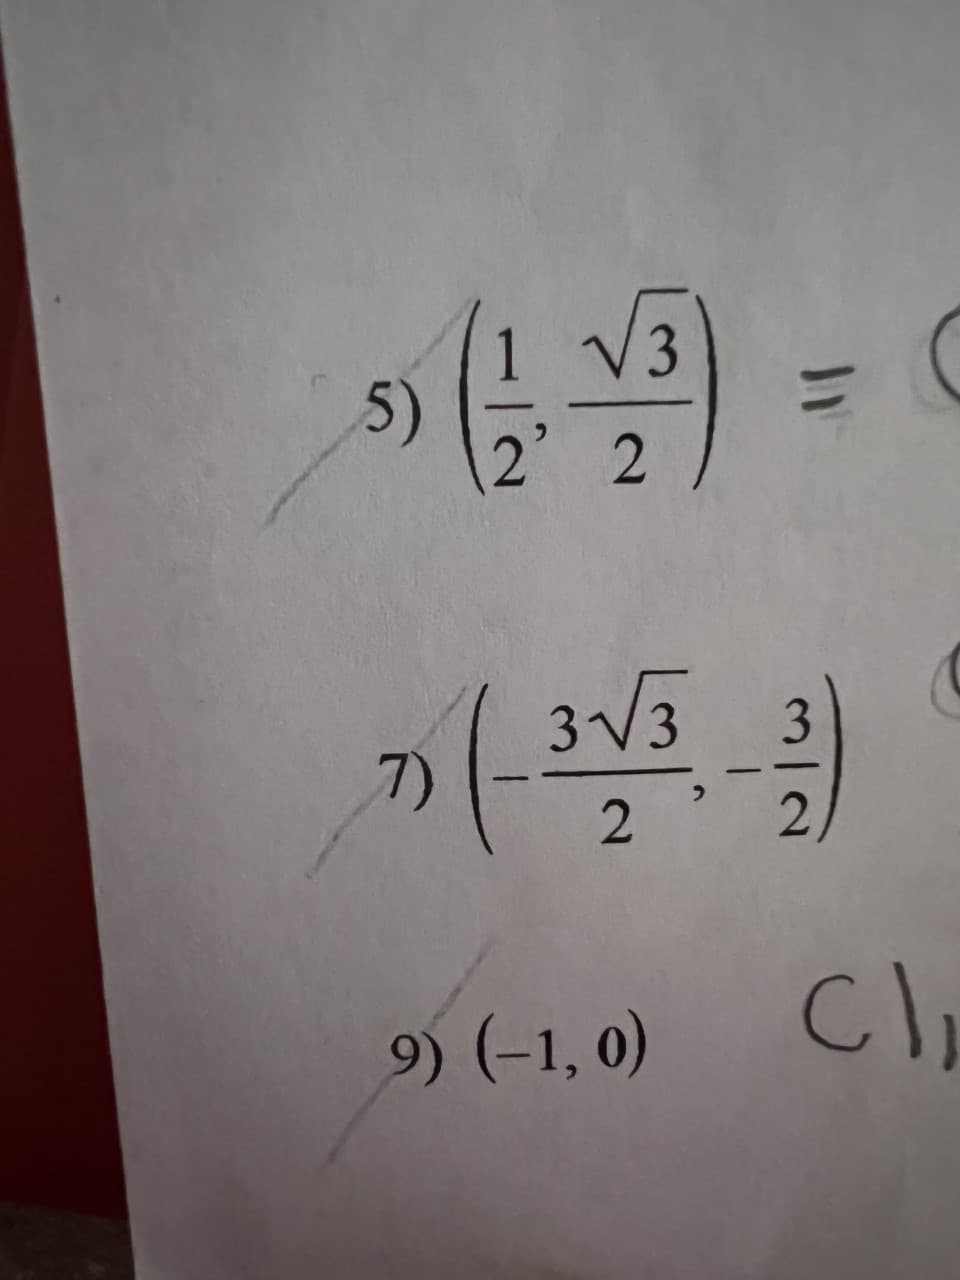 5)
√3
2 2
=
33 3
2 '
2
C)₁
7)
9) (-1,0)